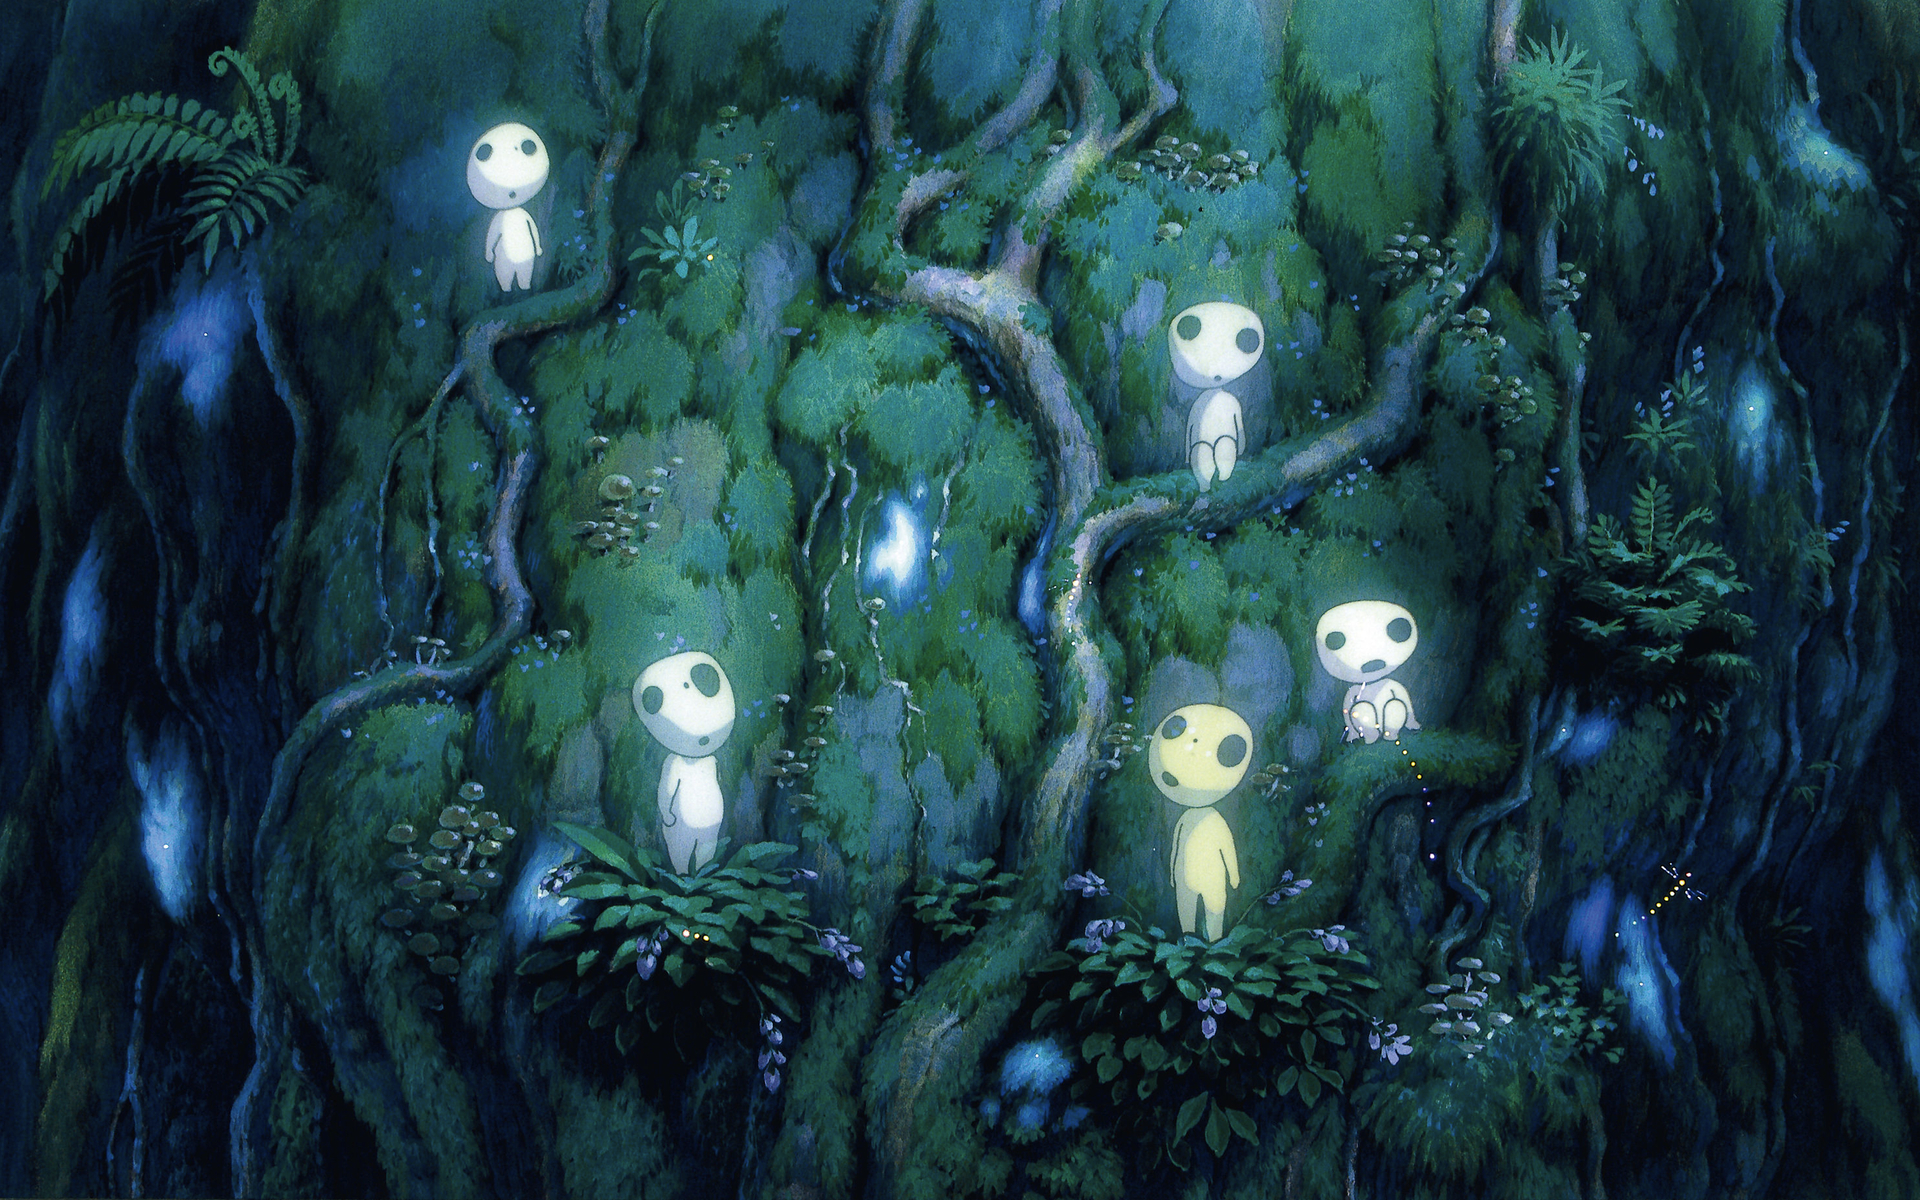 Studio Ghibli - The Beautiful Environmentalism